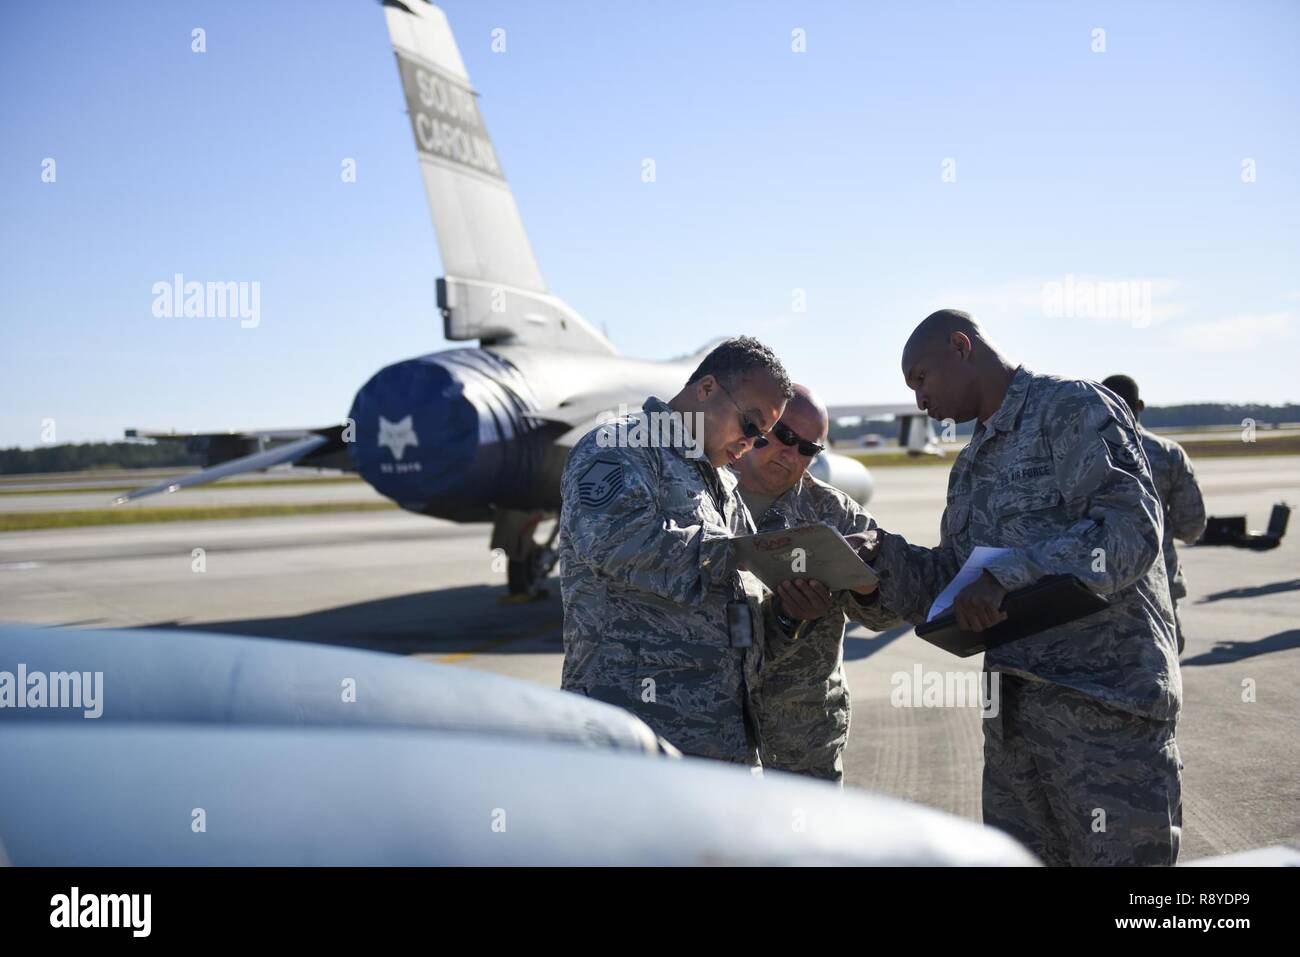 Us Air Force Master Sgt. Anthony King, Chief Master Sgt. Harold Nash und Master Sgt. Michael Irick, von links nach rechts, von der 169th Maintenance Group, die Konfiguration der Aufteilung von Bomben zu Kampfjets in der Tyndall Air Force Base in Florida am März 11, 2017 diskutieren. Mehr als 200 Flieger von der 169th Fighter Wing, South Carolina Air National Guard eingesetzt werden für die Waffensysteme Auswertung Programms (WSEP). Der WSEP Zweck ist die Fähigkeit einer Einheit, um effektiv Munition durch alle Stadien liefern zu bewerten, von Munition, Waffen laden auf das tatsächliche Start- oder Fallenlassen der Weap bauen Stockfoto